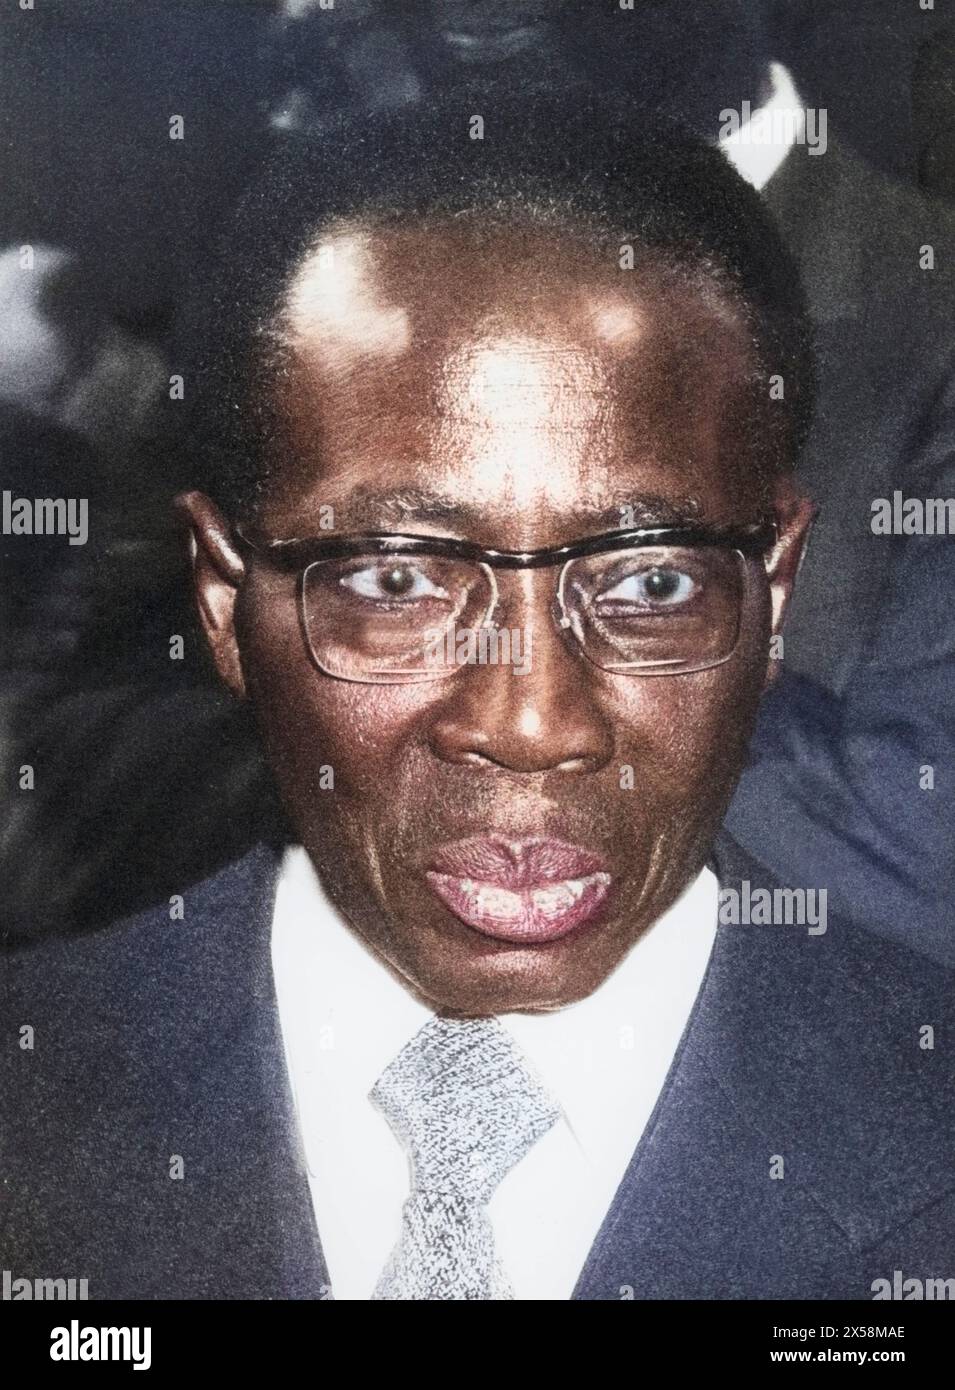 Senghor, Leopold SEDAR, 9.10.1906 - 20.12.2001, auteur / écrivain et homme politique sénégalais, ADDITIONAL-RIGHTS-LEARANCE-INFO-NOT-AVAILABLE Banque D'Images